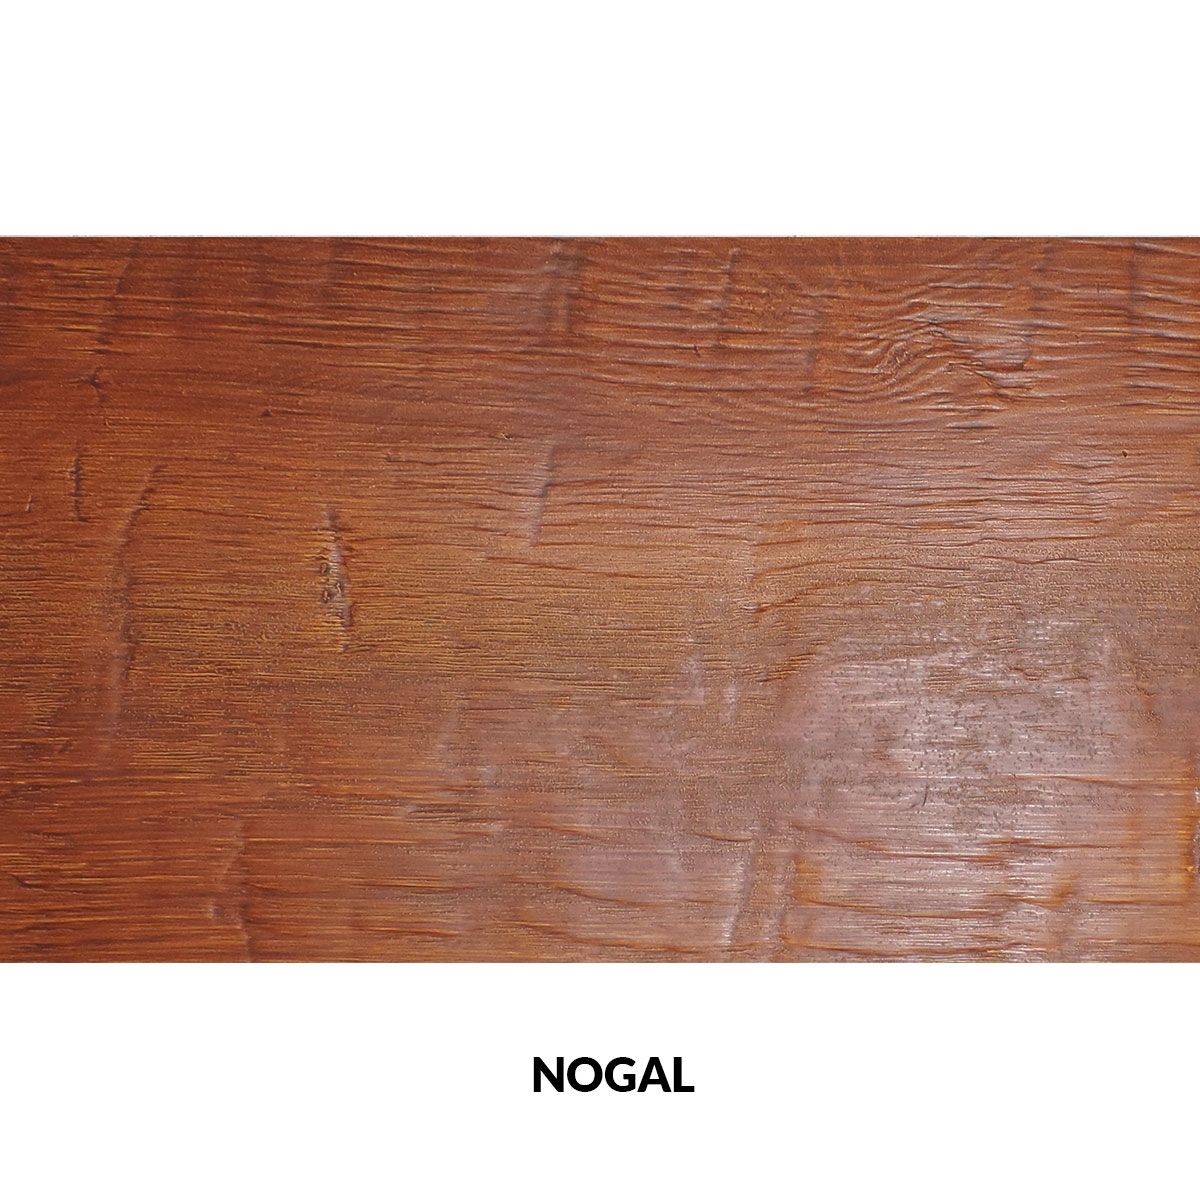 Panel rústico de tres lamas imitación madera de 300x62cm nogal